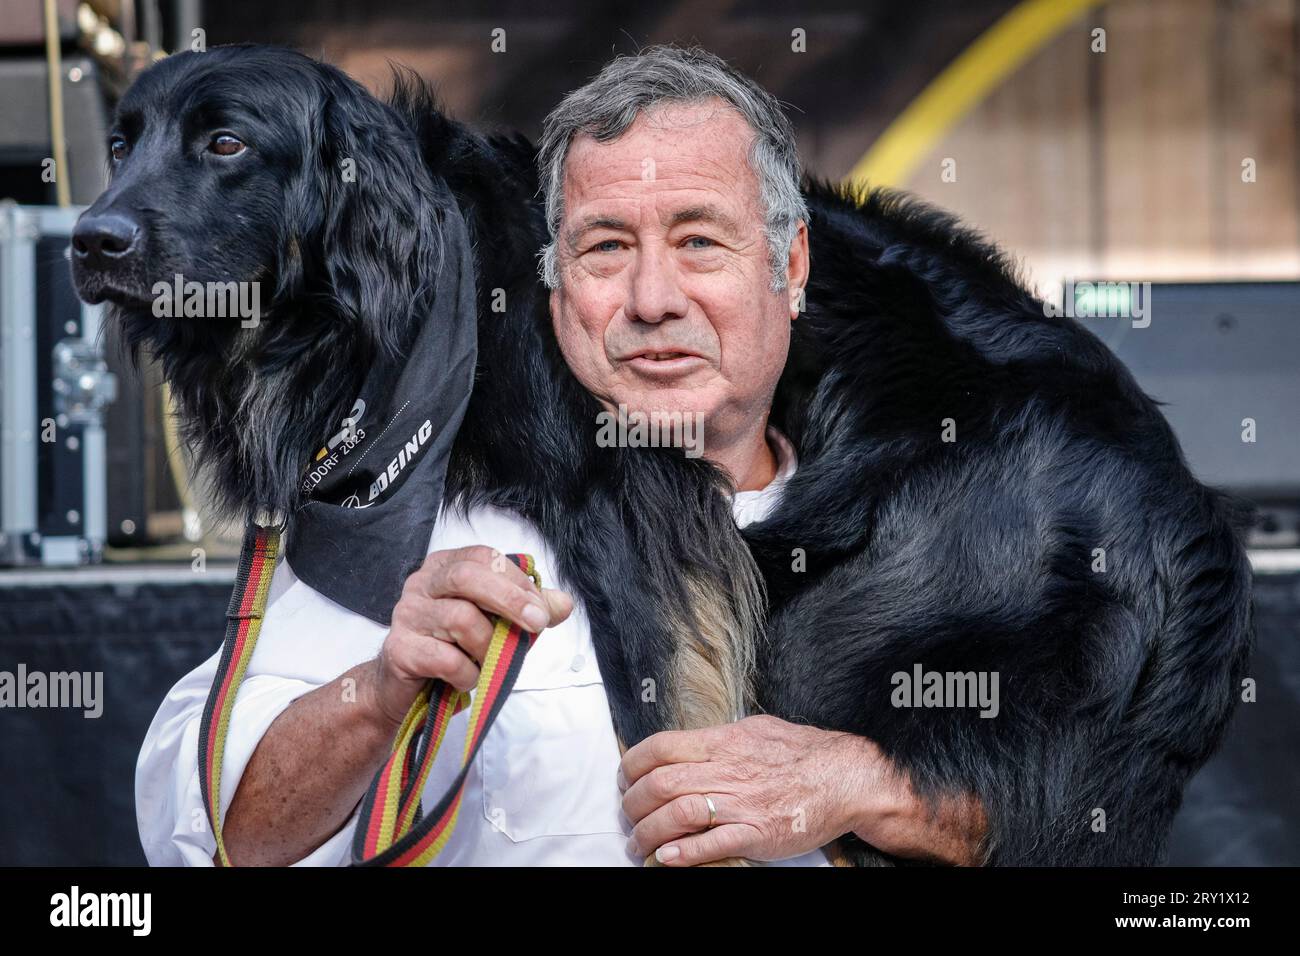 Labradoodle Doubaz, Service-, Hilfs- und Therapiehund mit dem menschlichen Begleiter John, Invictus Games Düsseldorf, Deutschland Stockfoto